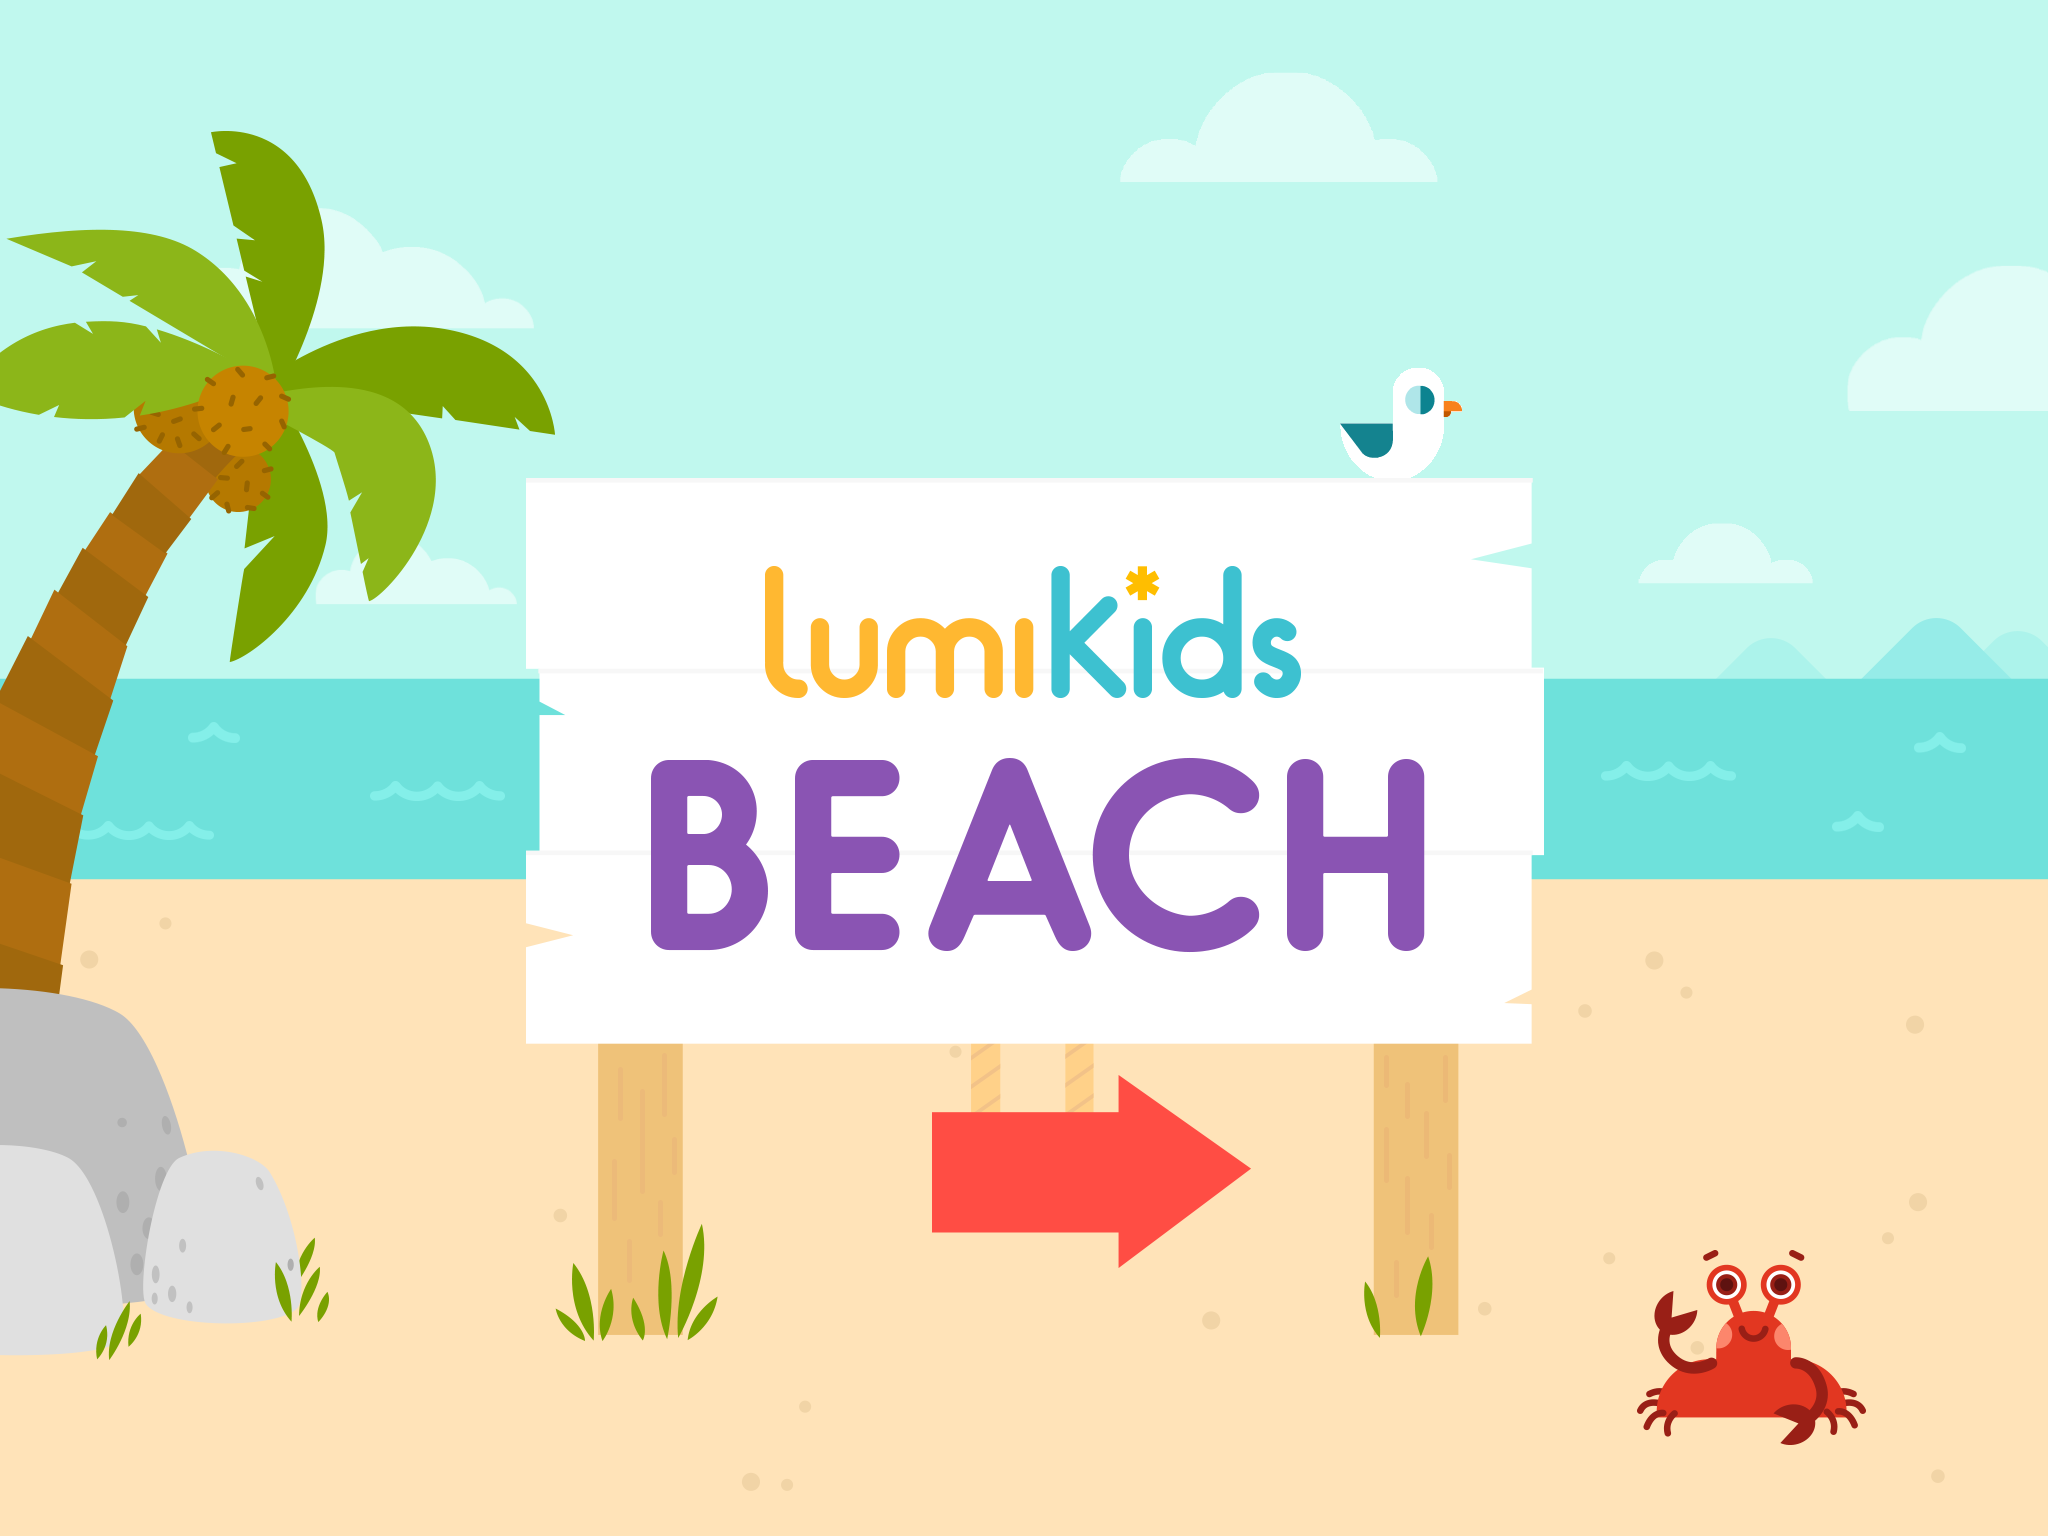 LumiKids Beach